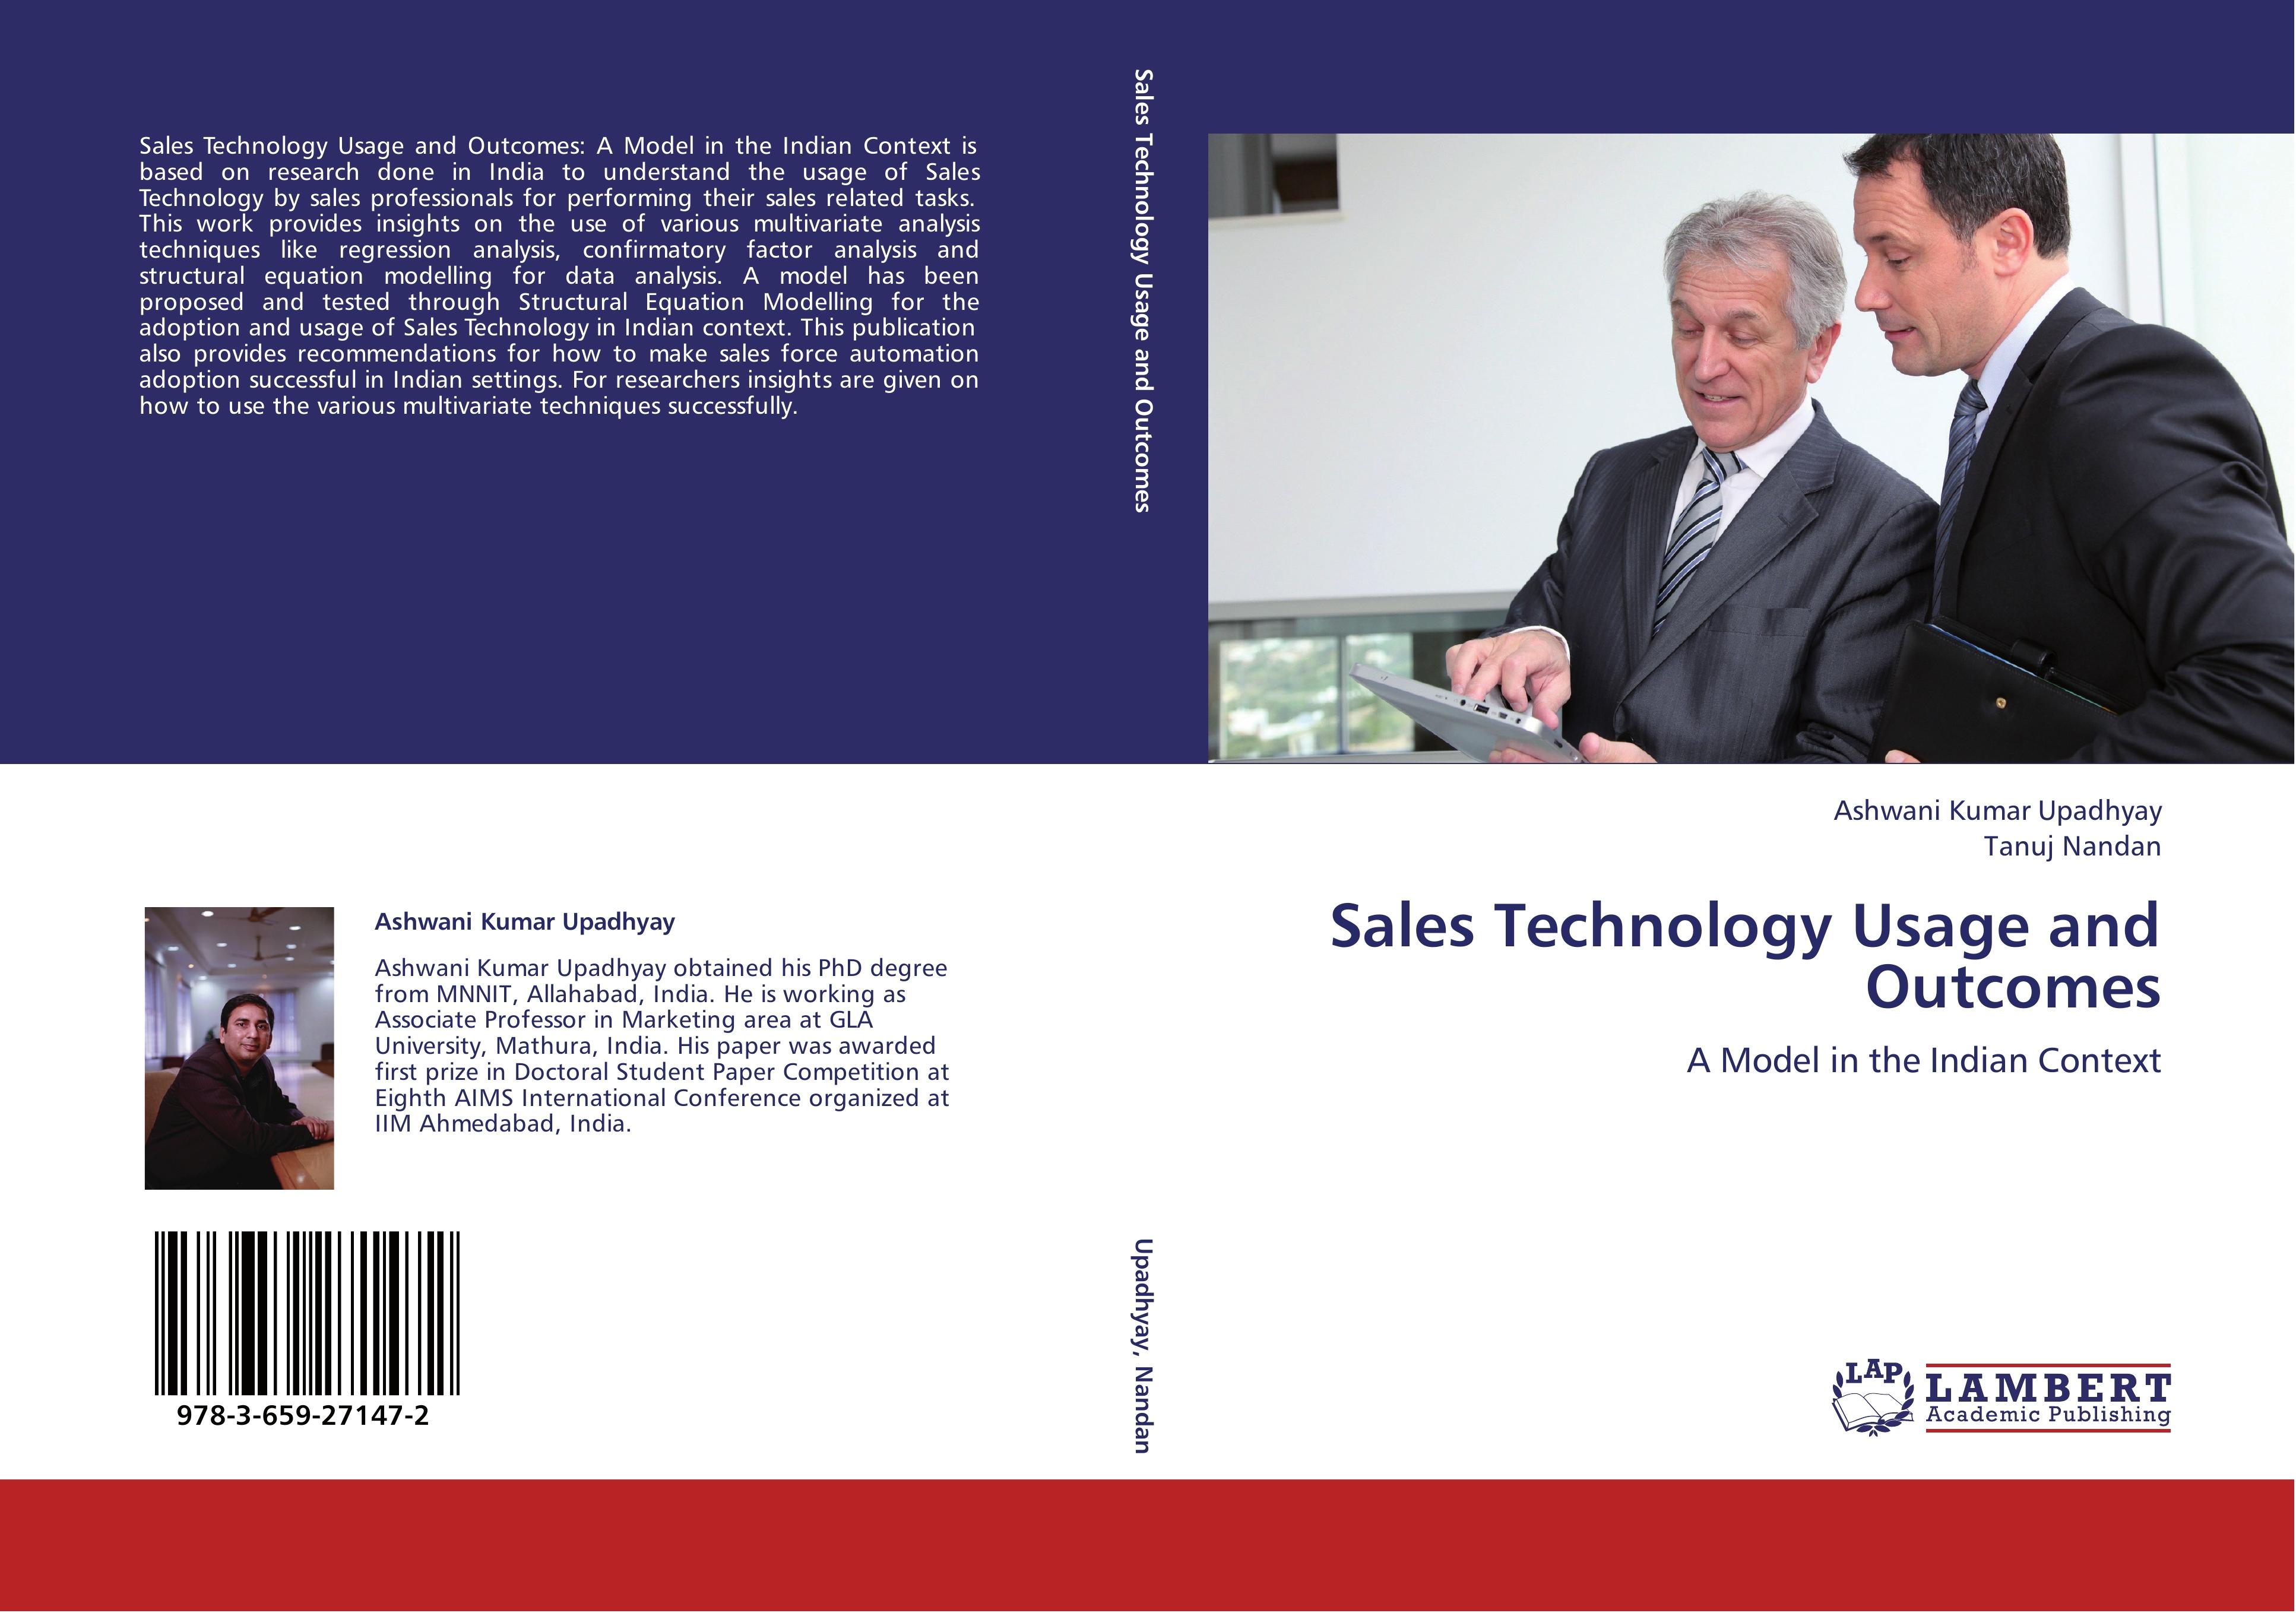 Sales Technology Usage and Outcomes - Ashwani Kumar Upadhyay Tanuj Nandan